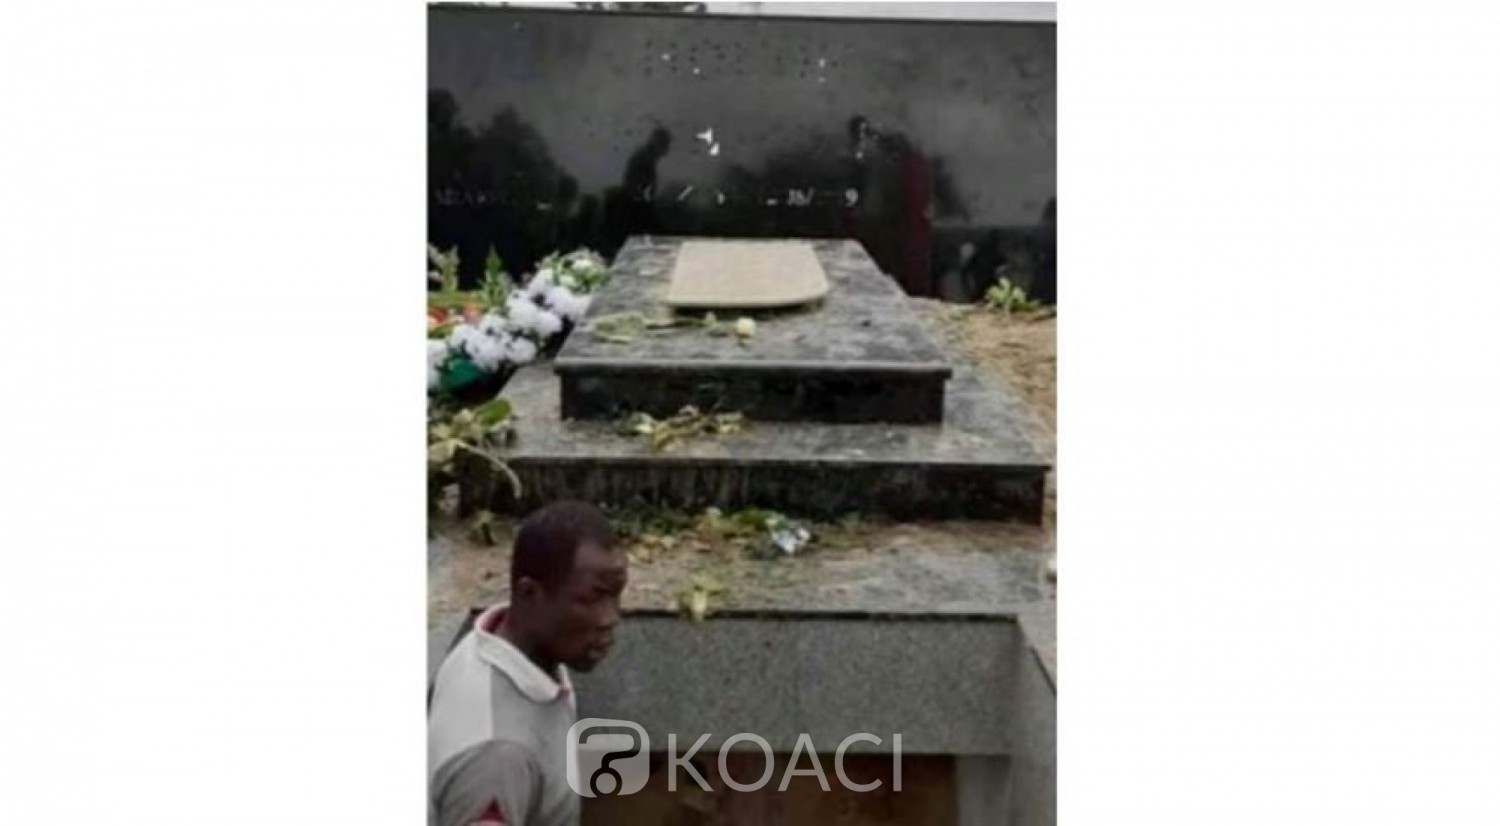 Côte d'Ivoire: Déterré par ses fans, le corps d'Arafat remis en terre, la tombe placée sous surveillance et silence de la classe politique